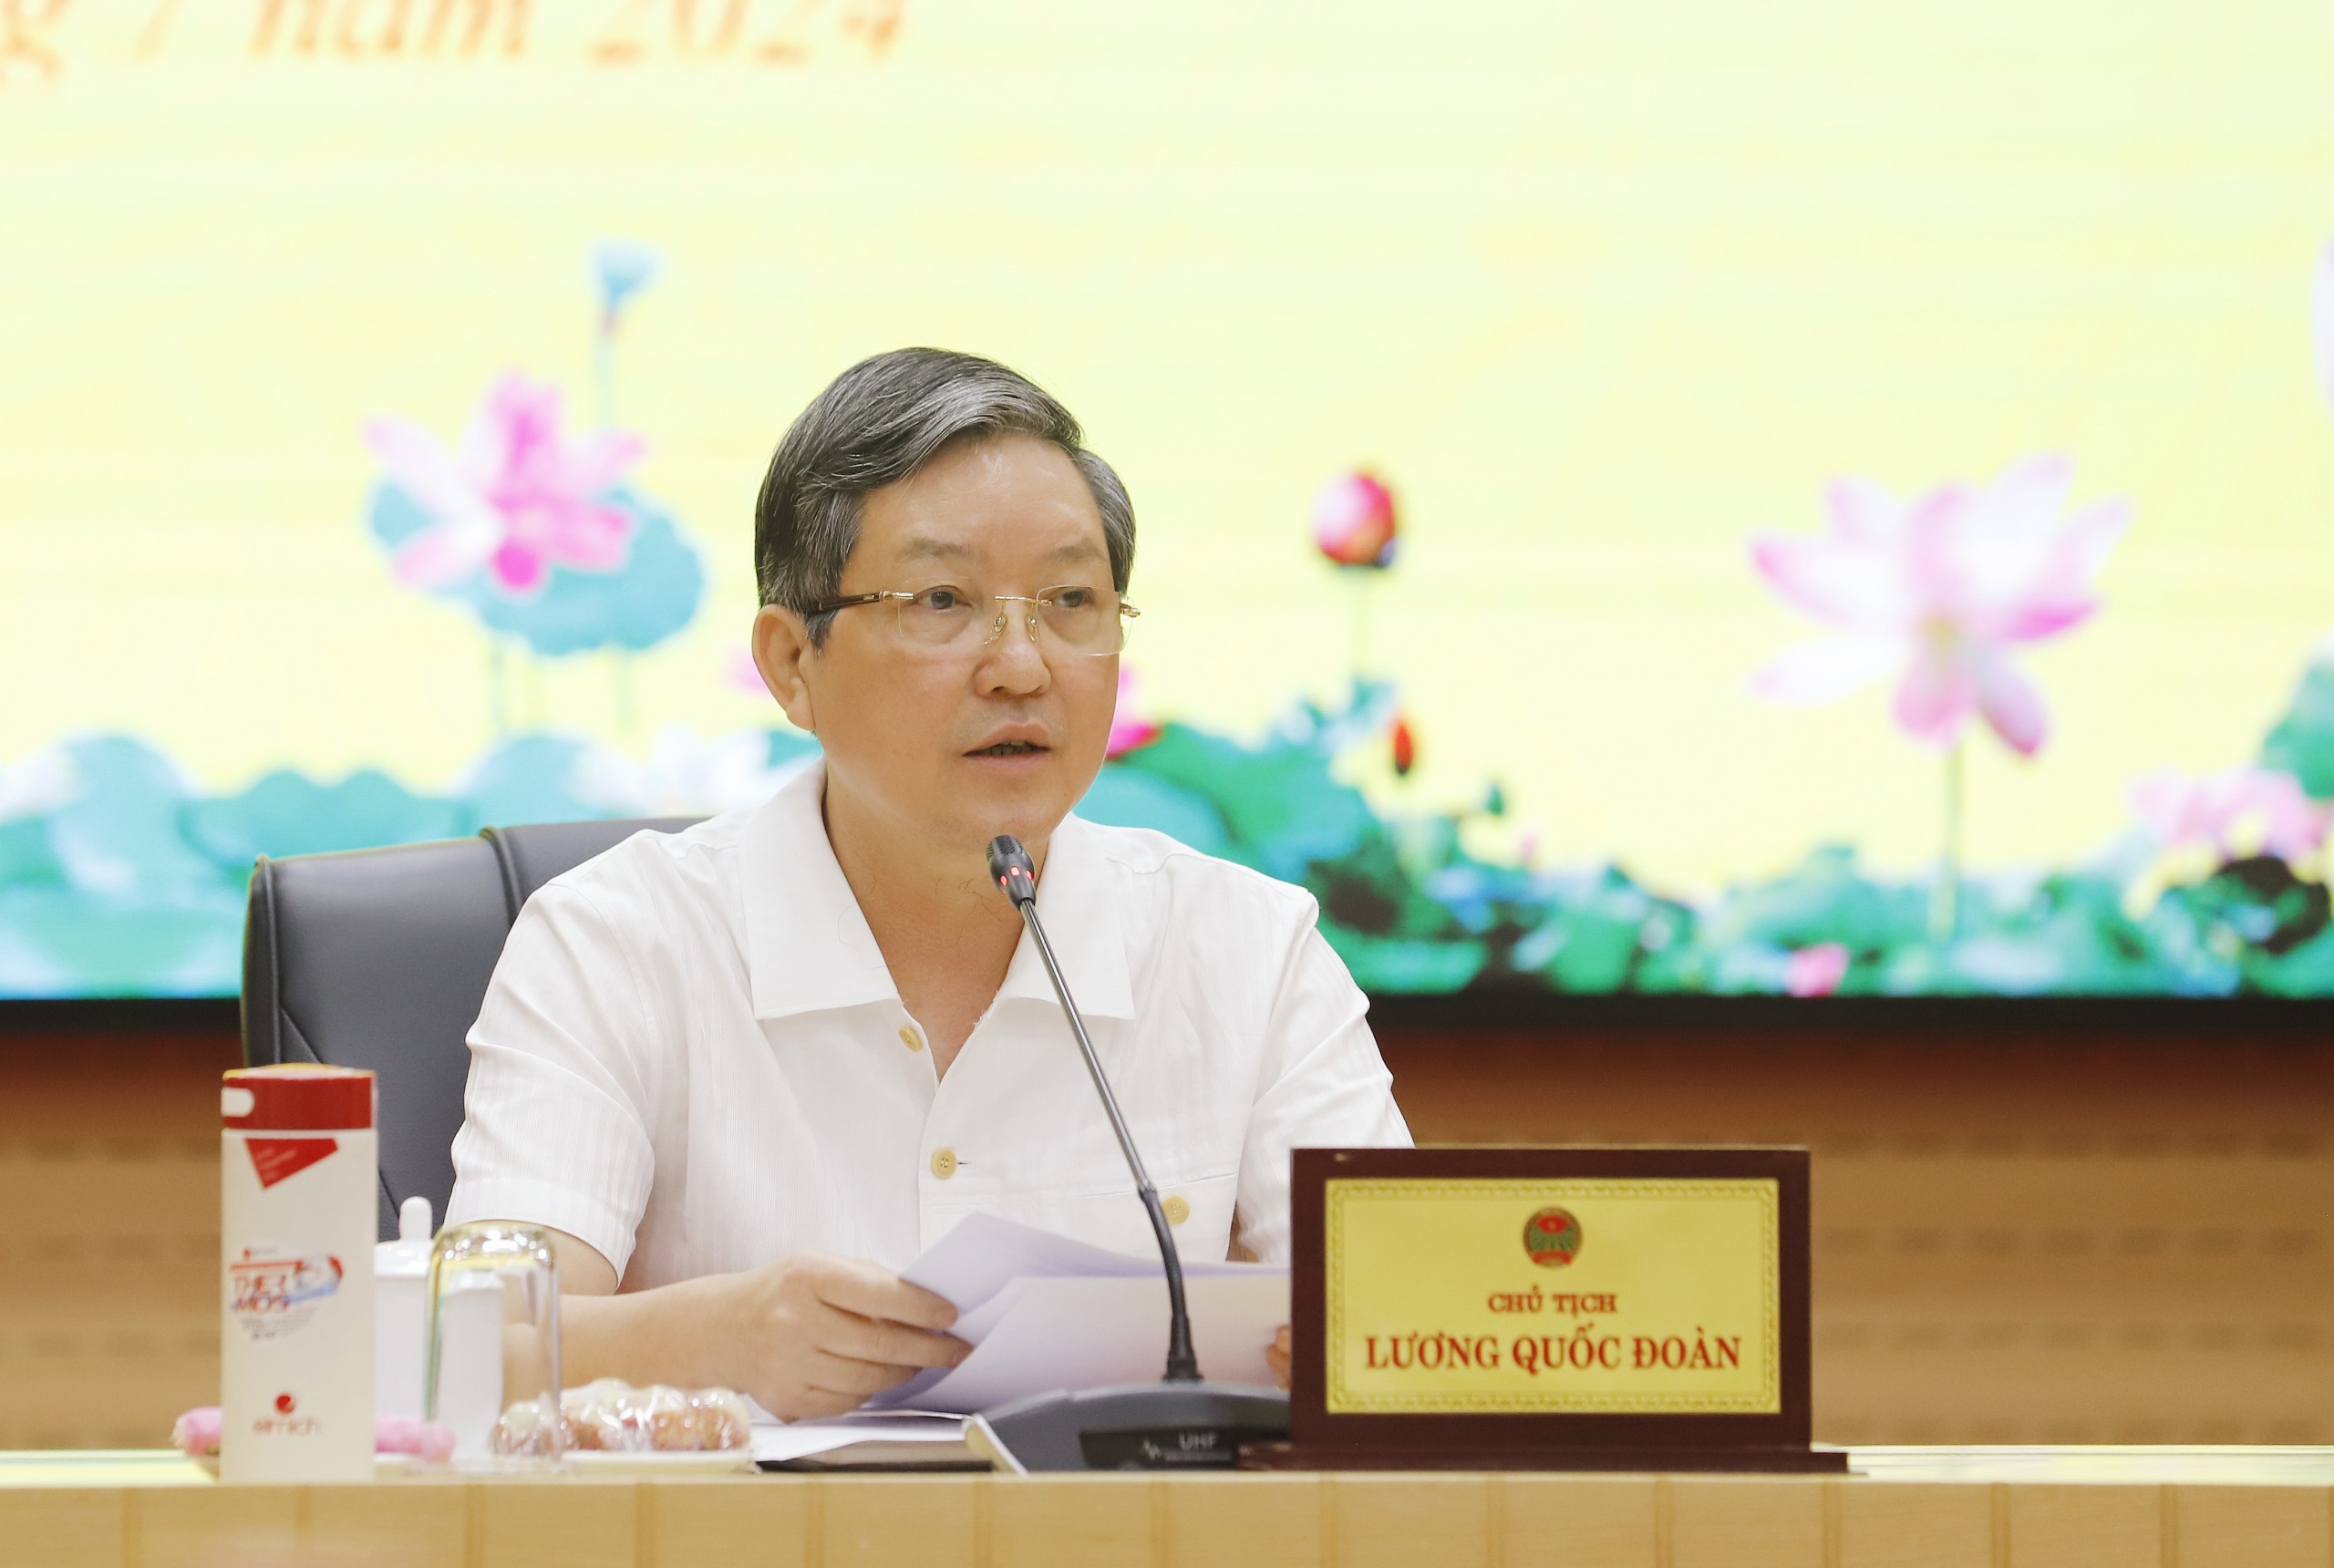 Đồng chí Nguyễn Văn Phan được bổ nhiệm làm Trưởng ban Tuyên giáo Trung ương Hội Nông dân Việt Nam- Ảnh 6.